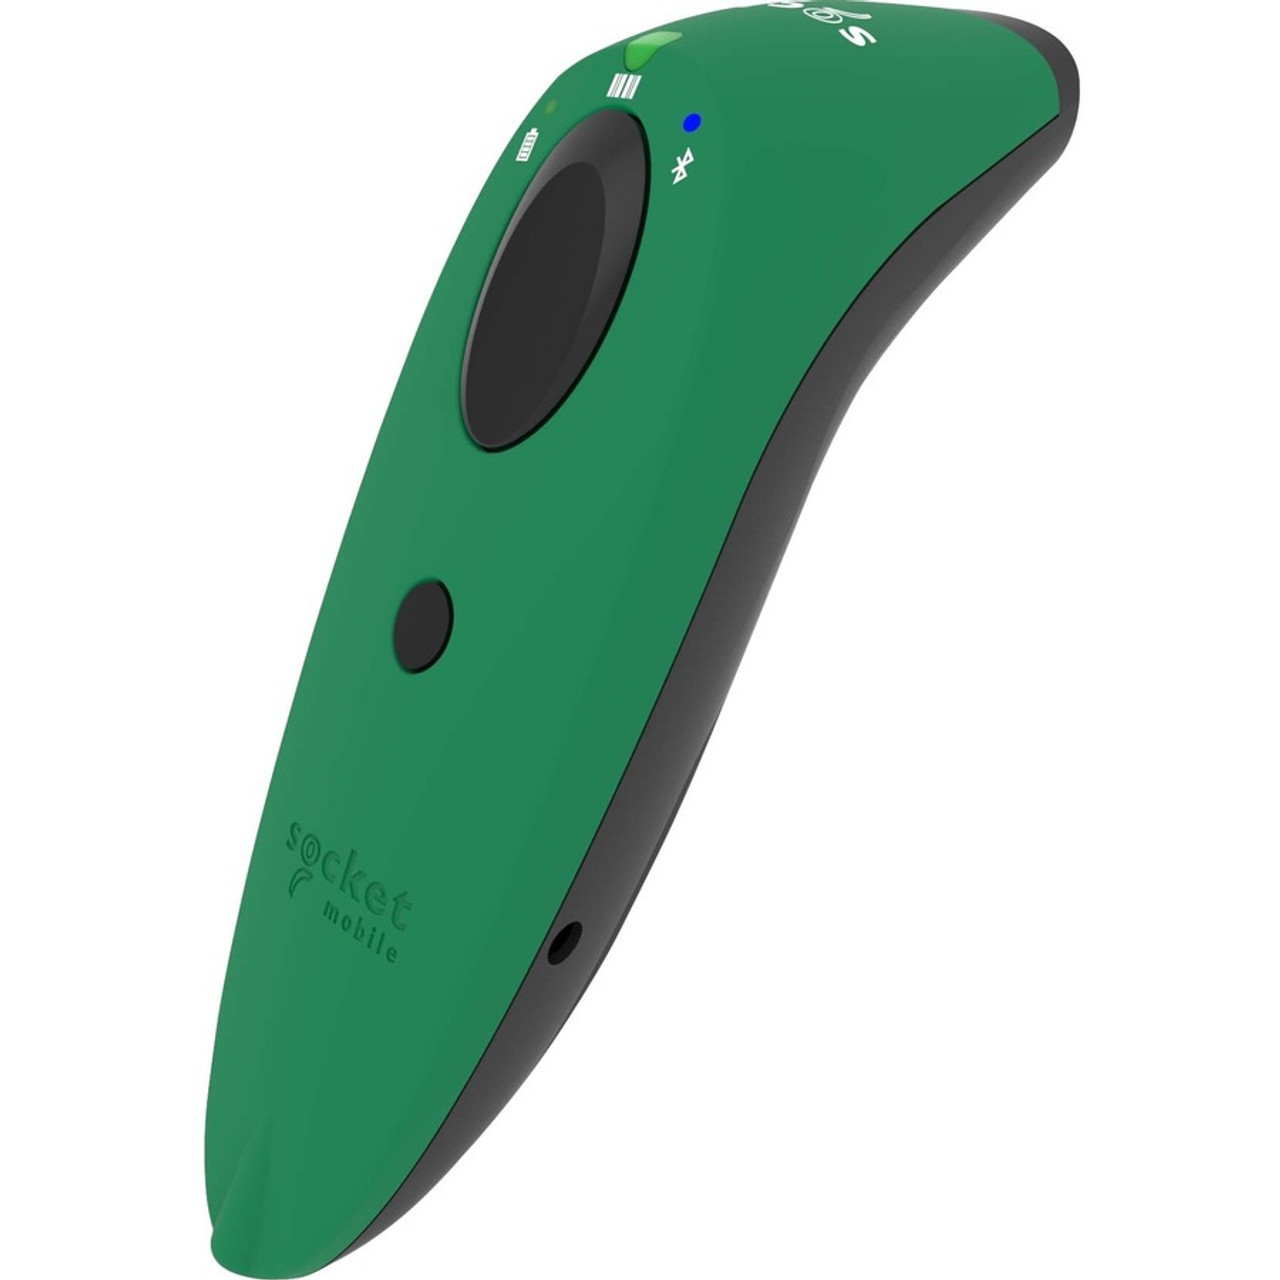 SocketScan® S740, 1D/2D Imager Barcode Scanner, Green - S740, 1D/2D Imager Bluetooth Barcode Scanner, Green SCANNER GREEN - CX3417-1836